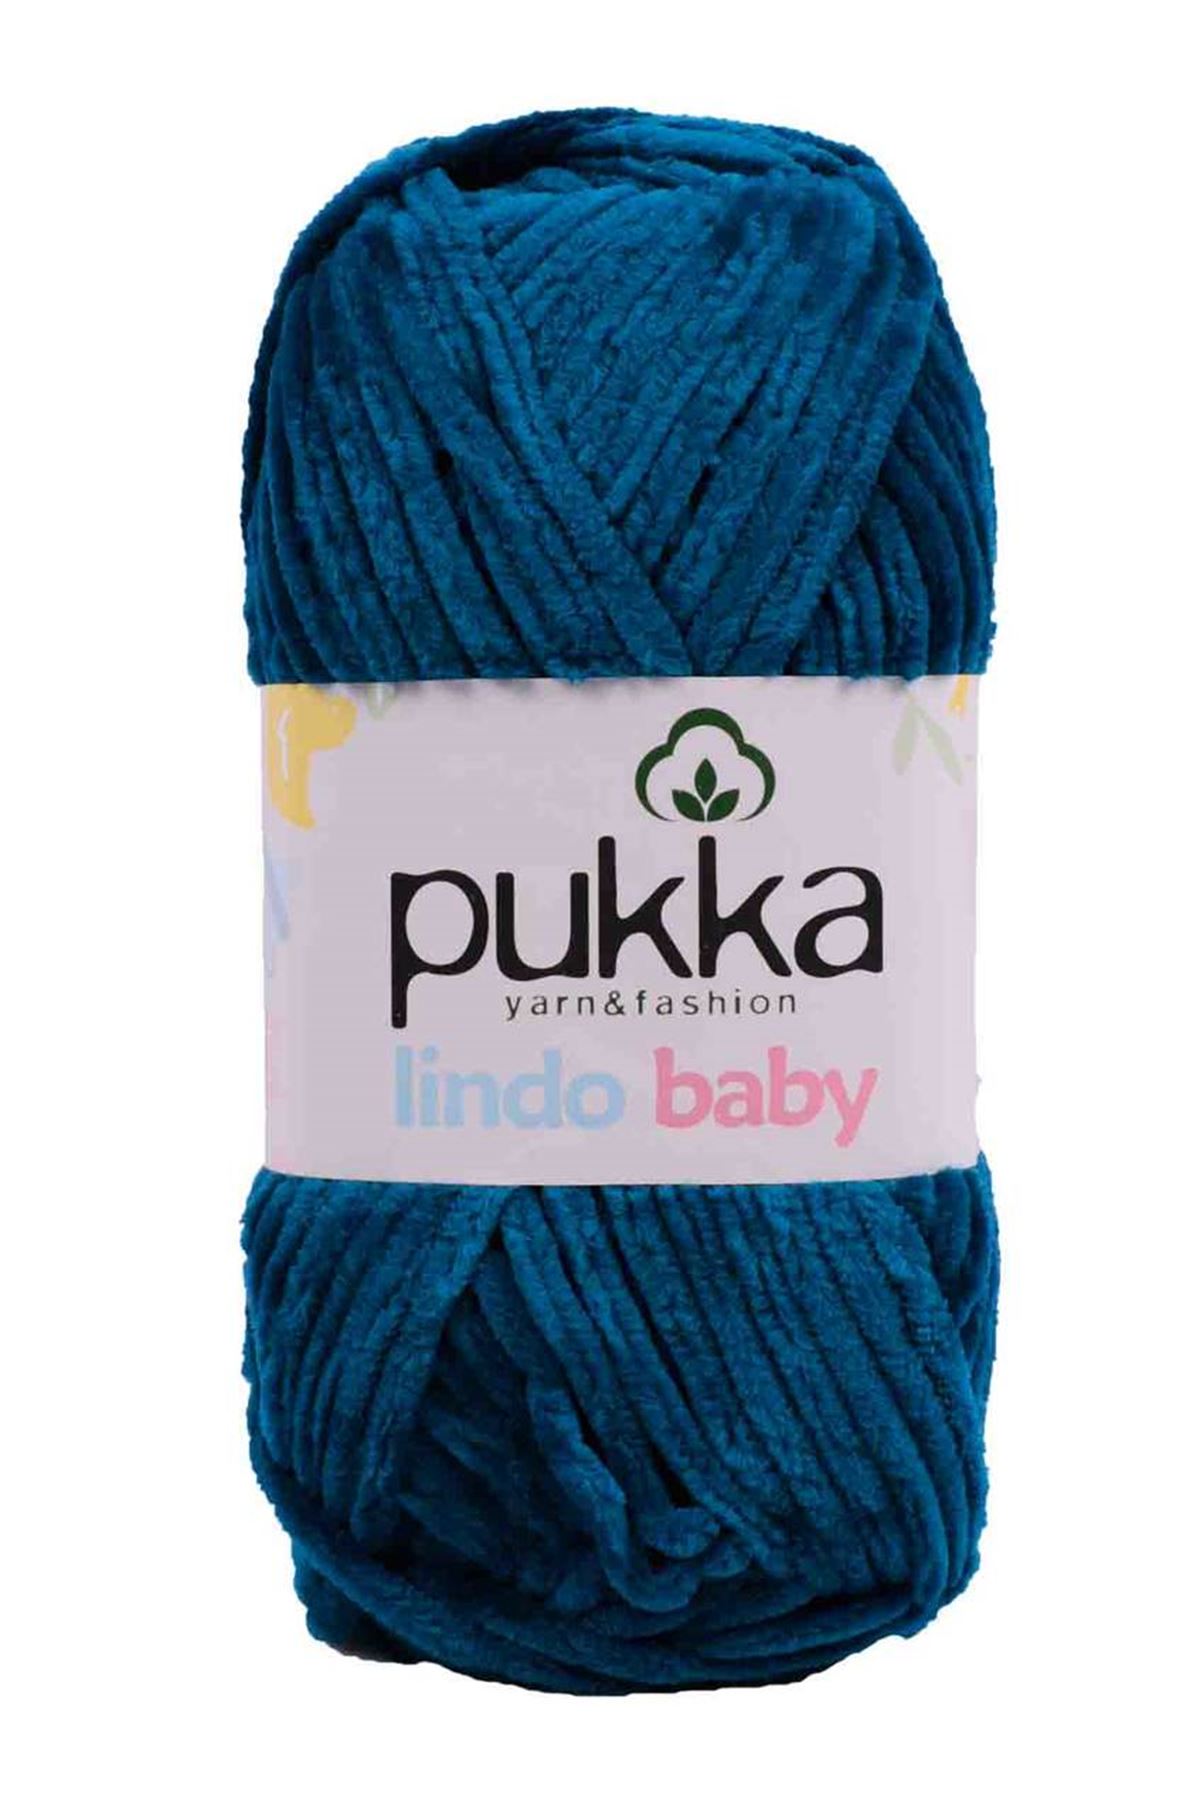 PUKKA Lindo Baby, 100g,70918